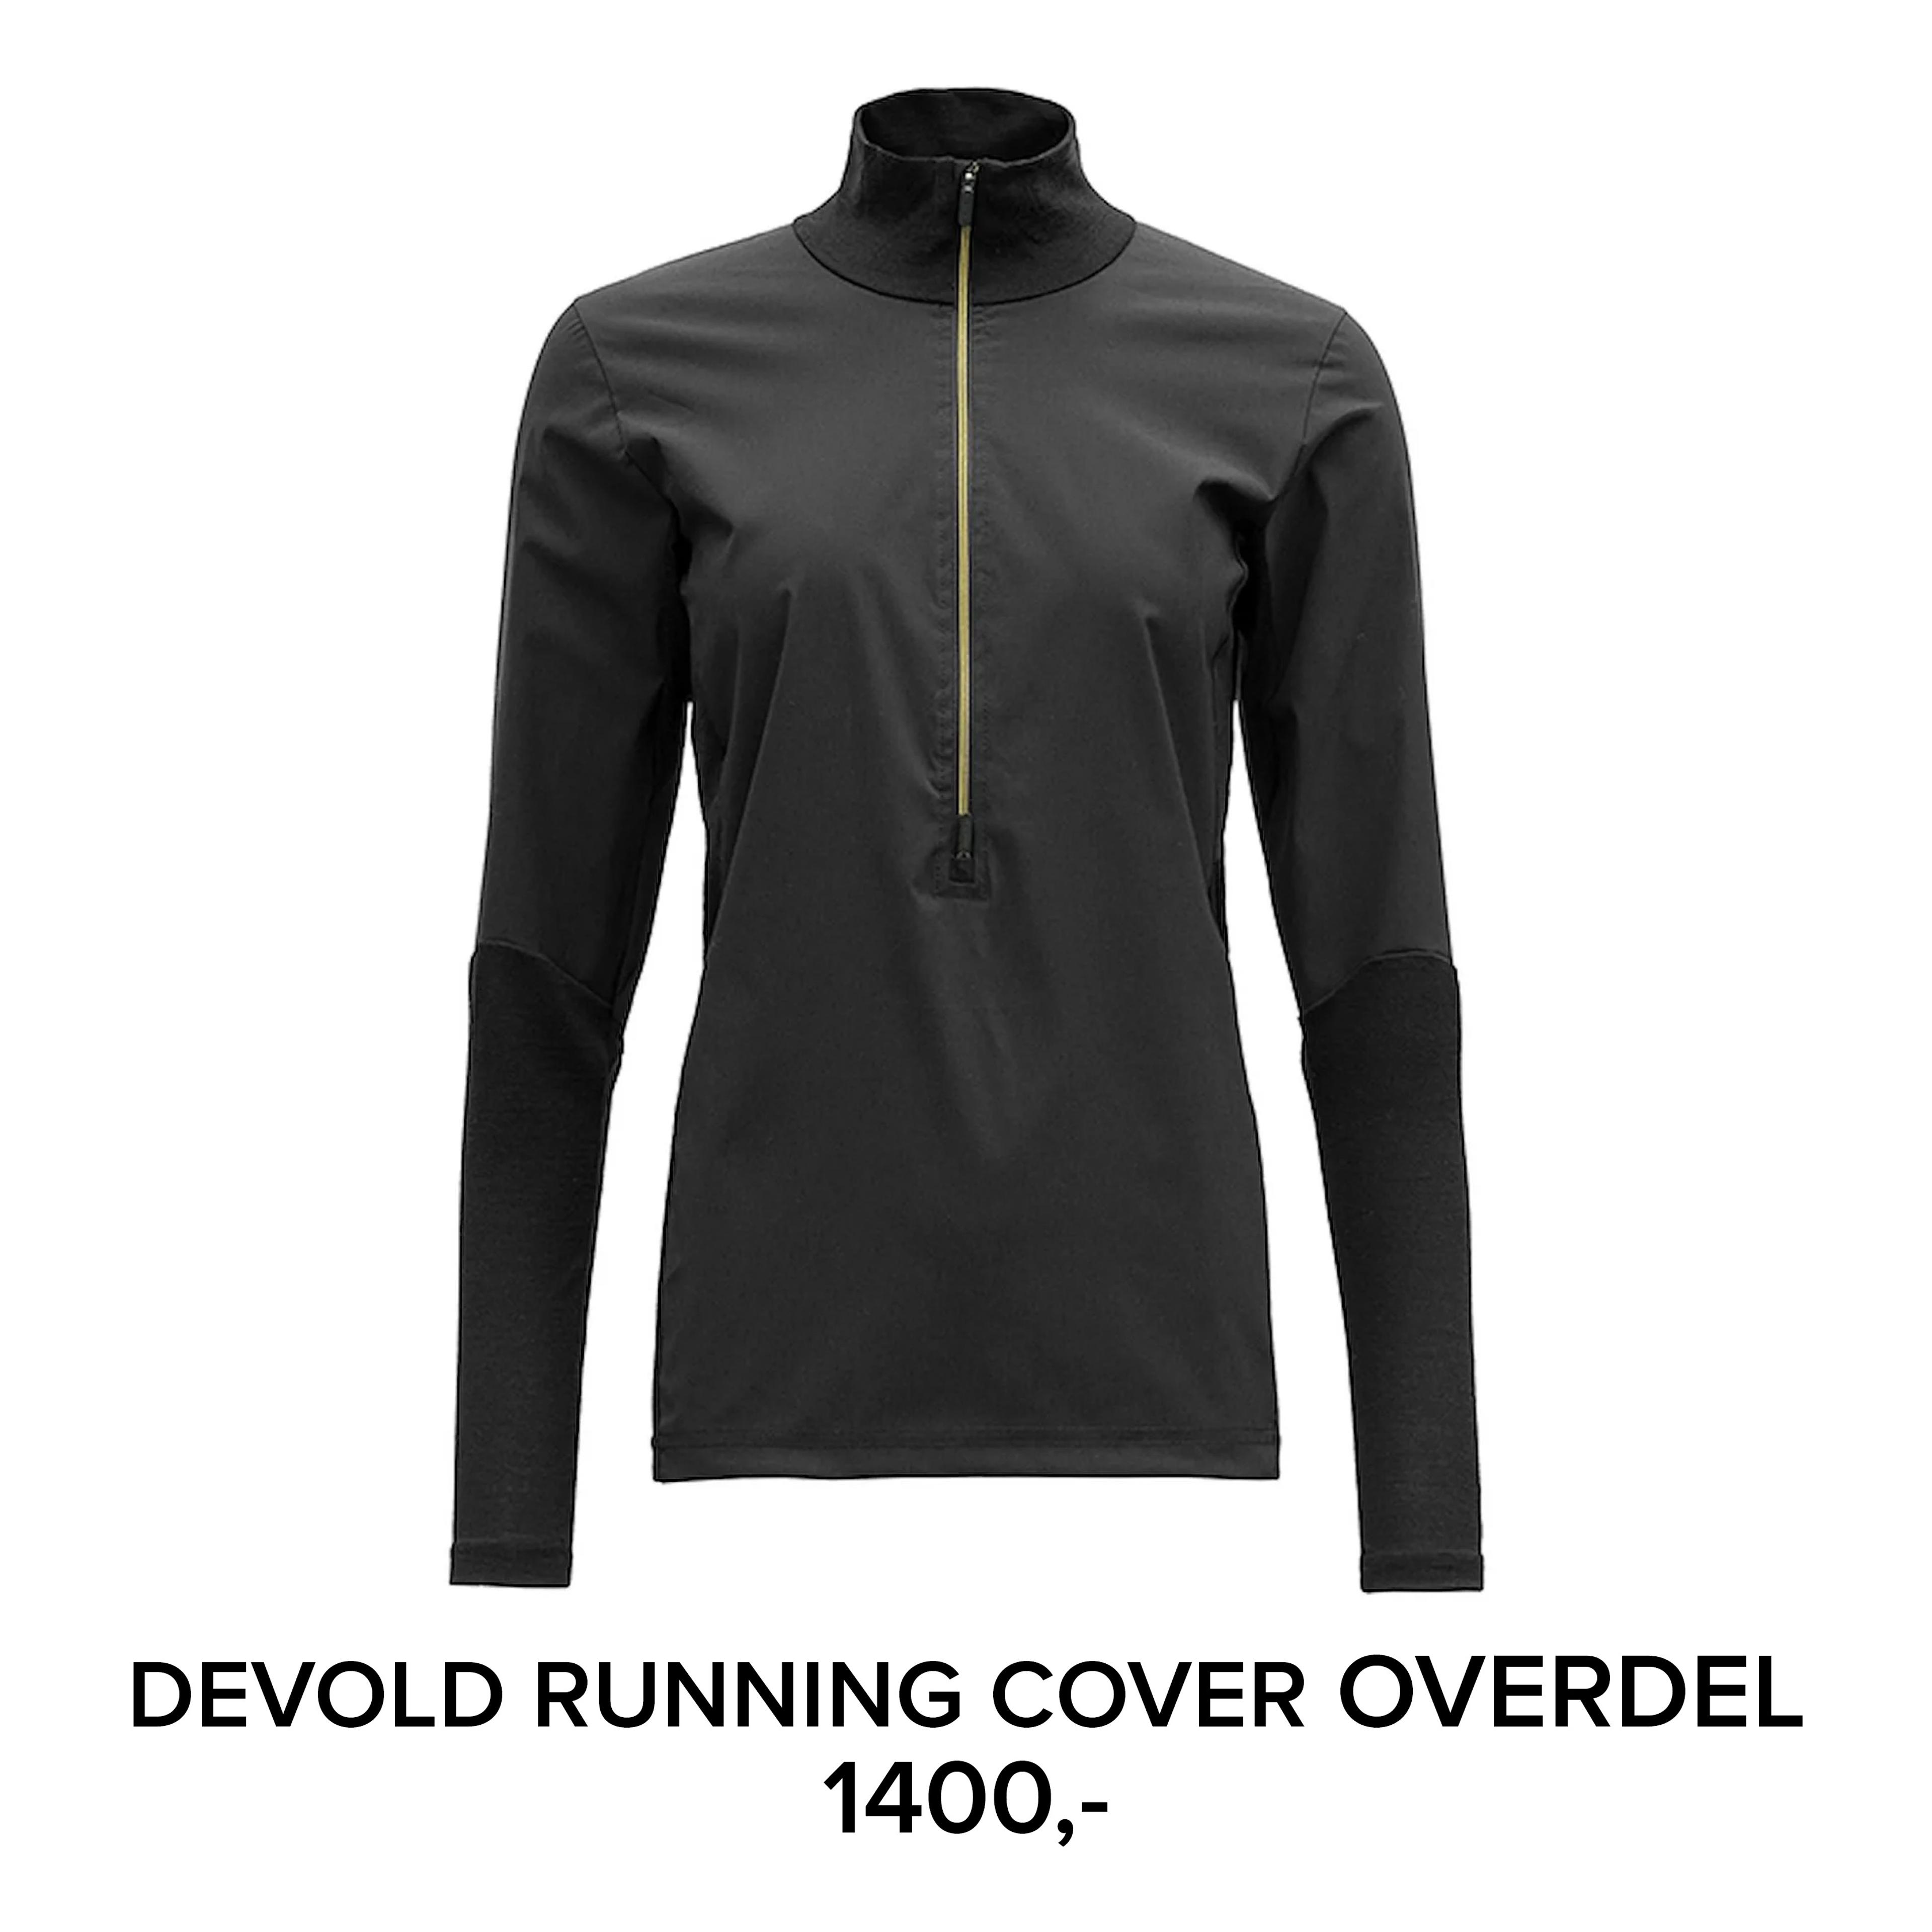 Devold running cover overdel